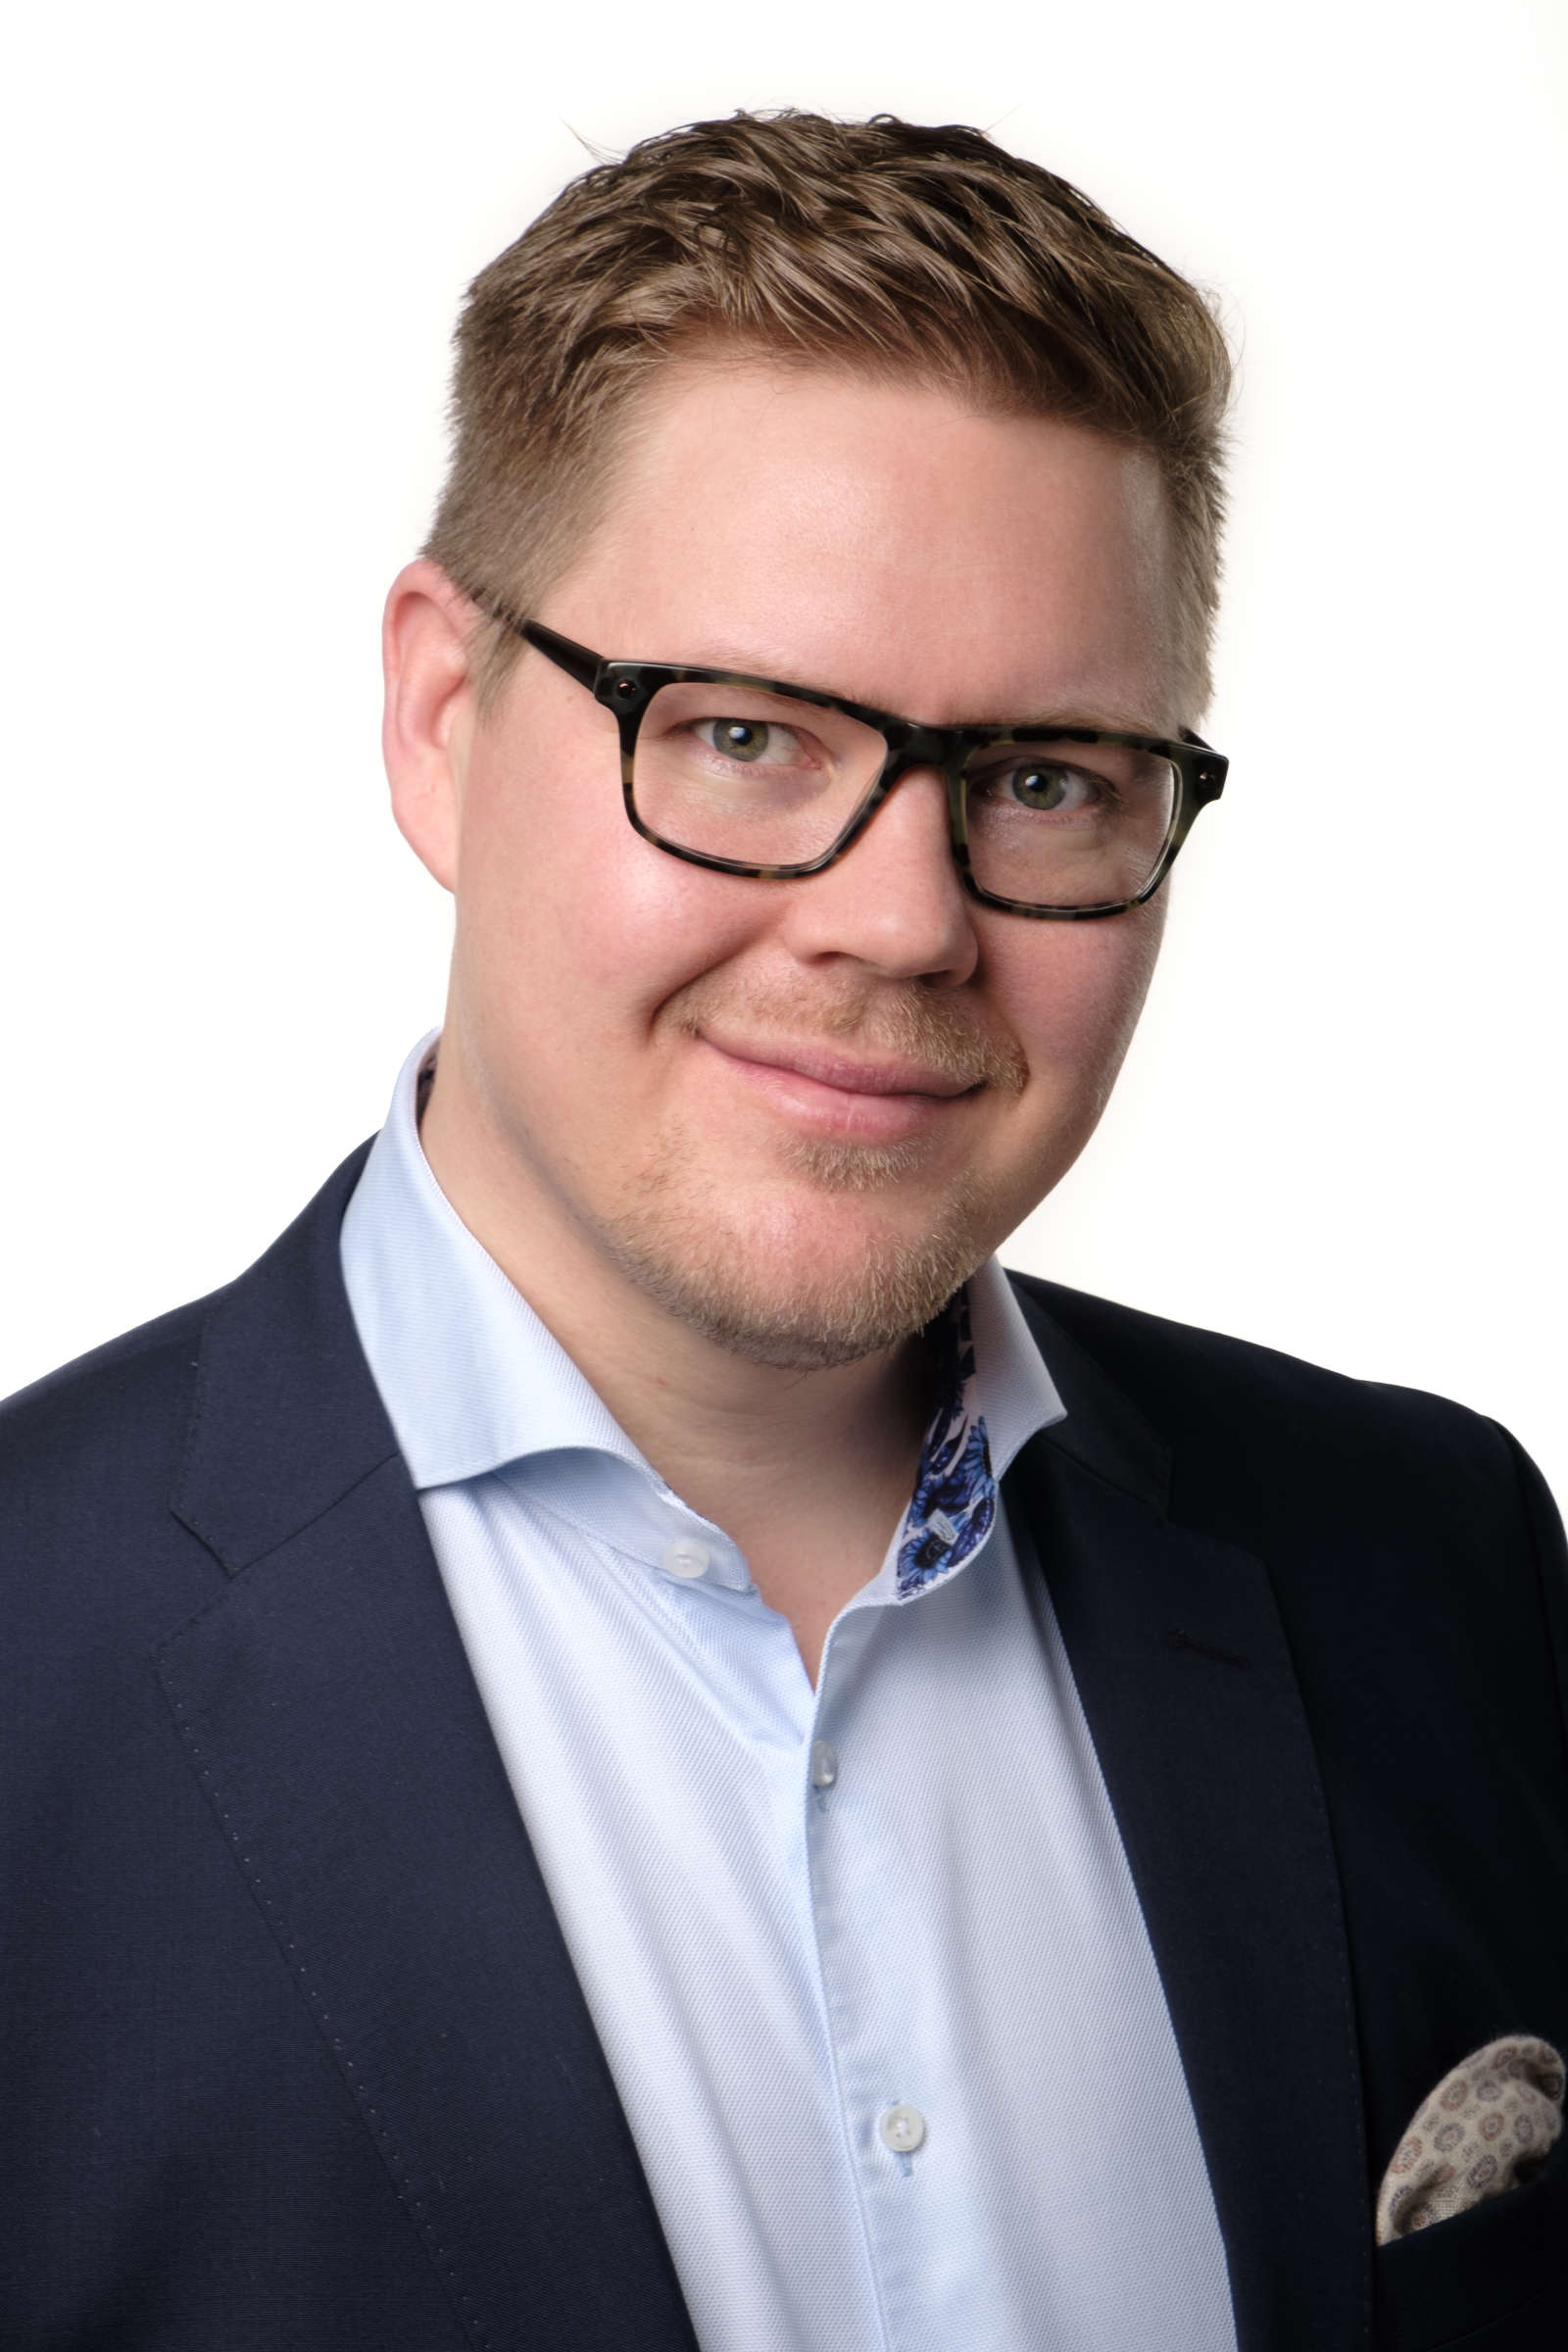 Eduskuntavaaliehdokas Antti Lindtman